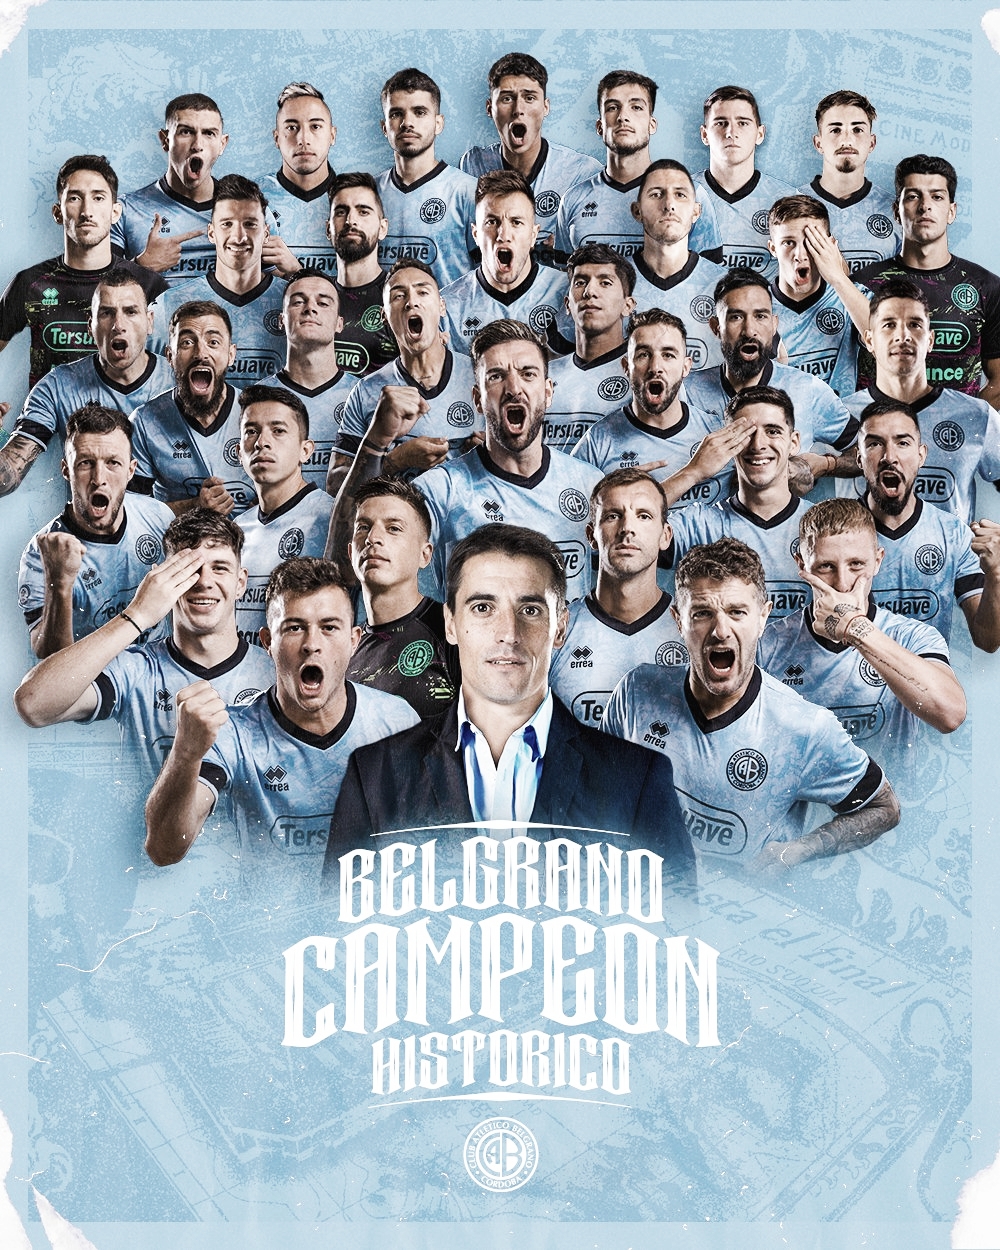 Especial de Belgrano en VAVEL: El plantel campeón